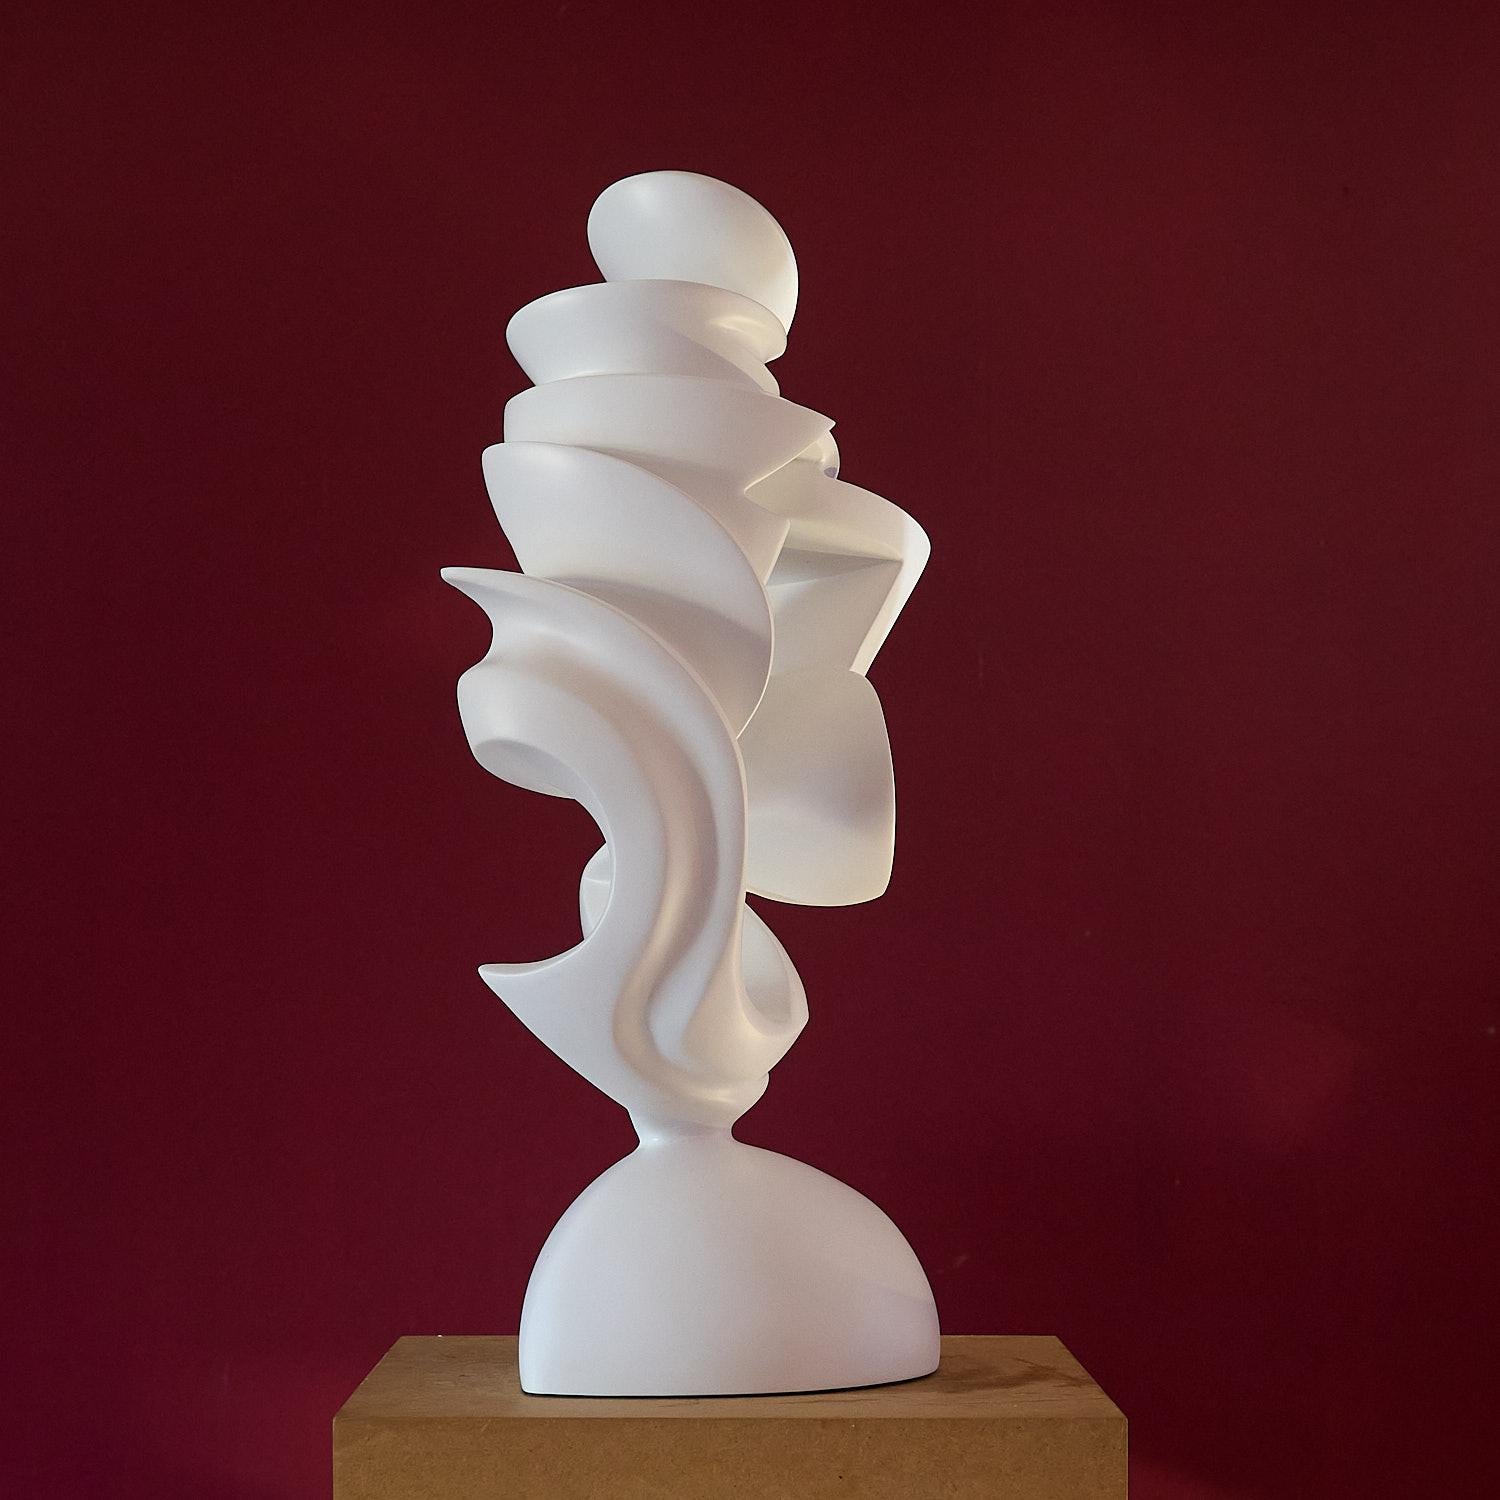 This contemporary modern art sculpture 